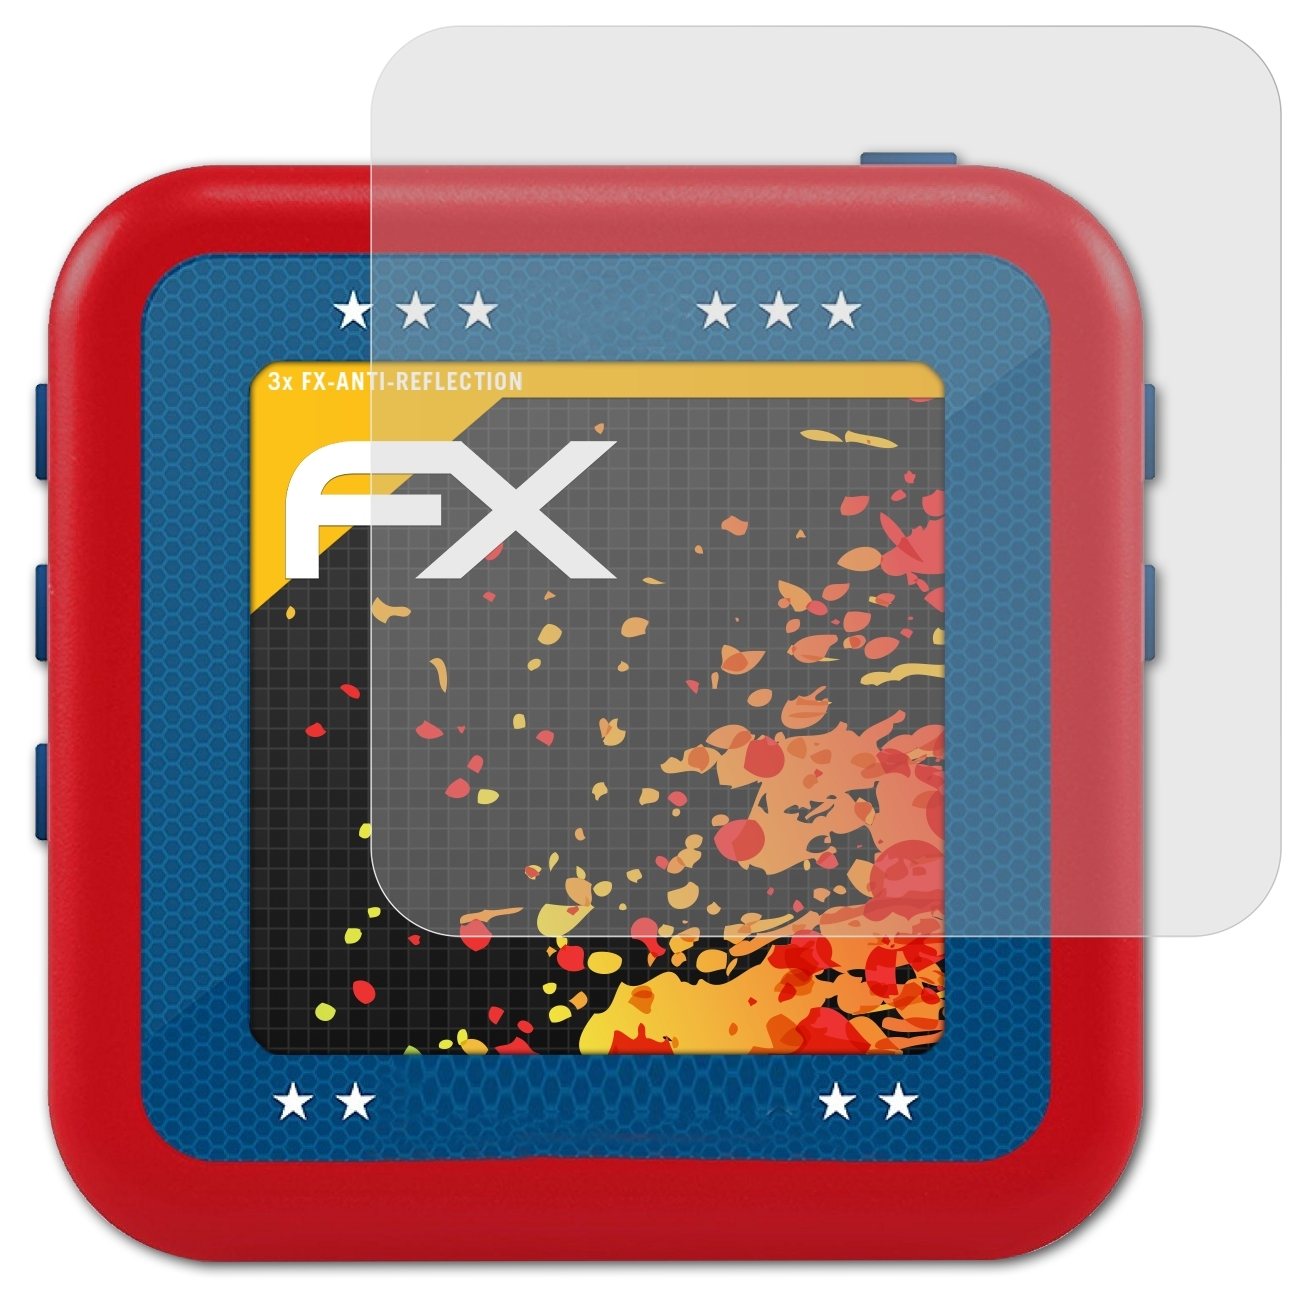 Displayschutz(für Phantom) Bushnell 3x FX-Antireflex ATFOLIX